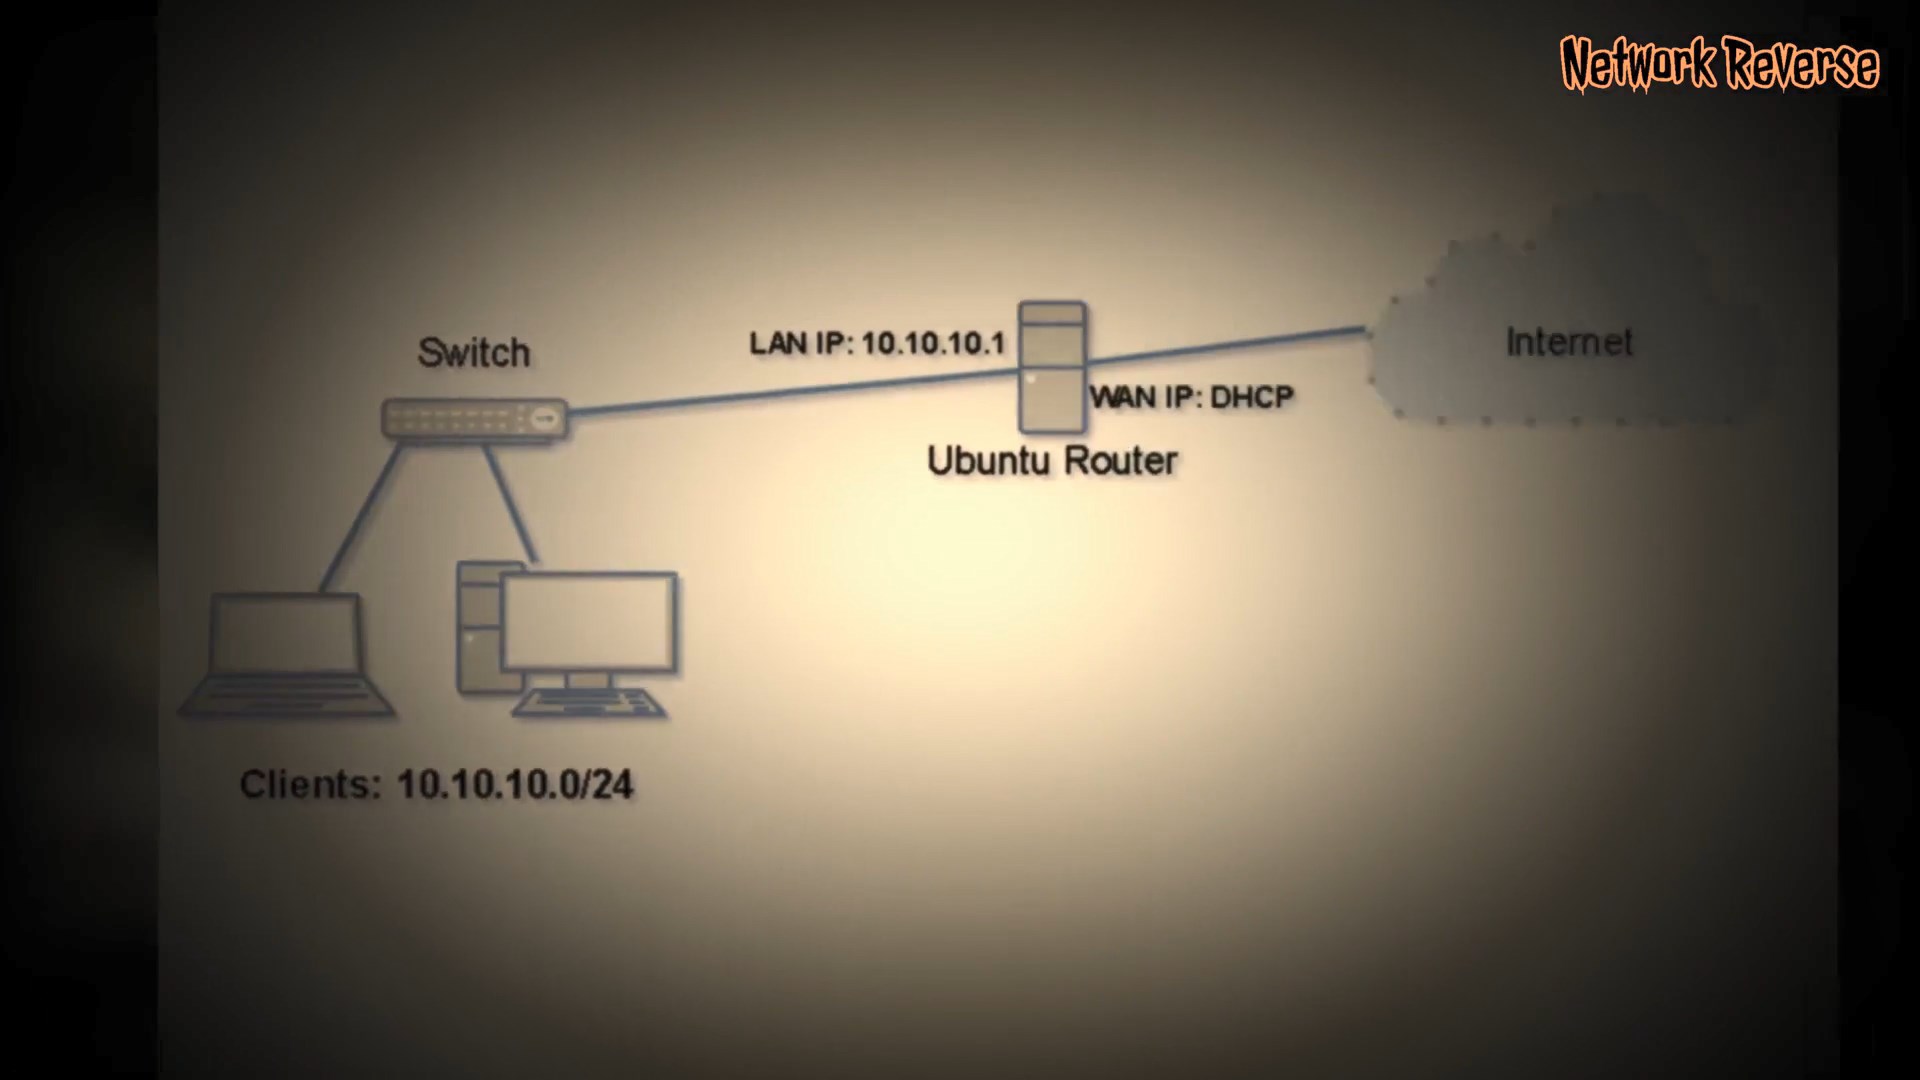 bud udføre Derbeville test How to build Linux Router with Ubuntu Server 20.04 LTS - NetworkReverse.com